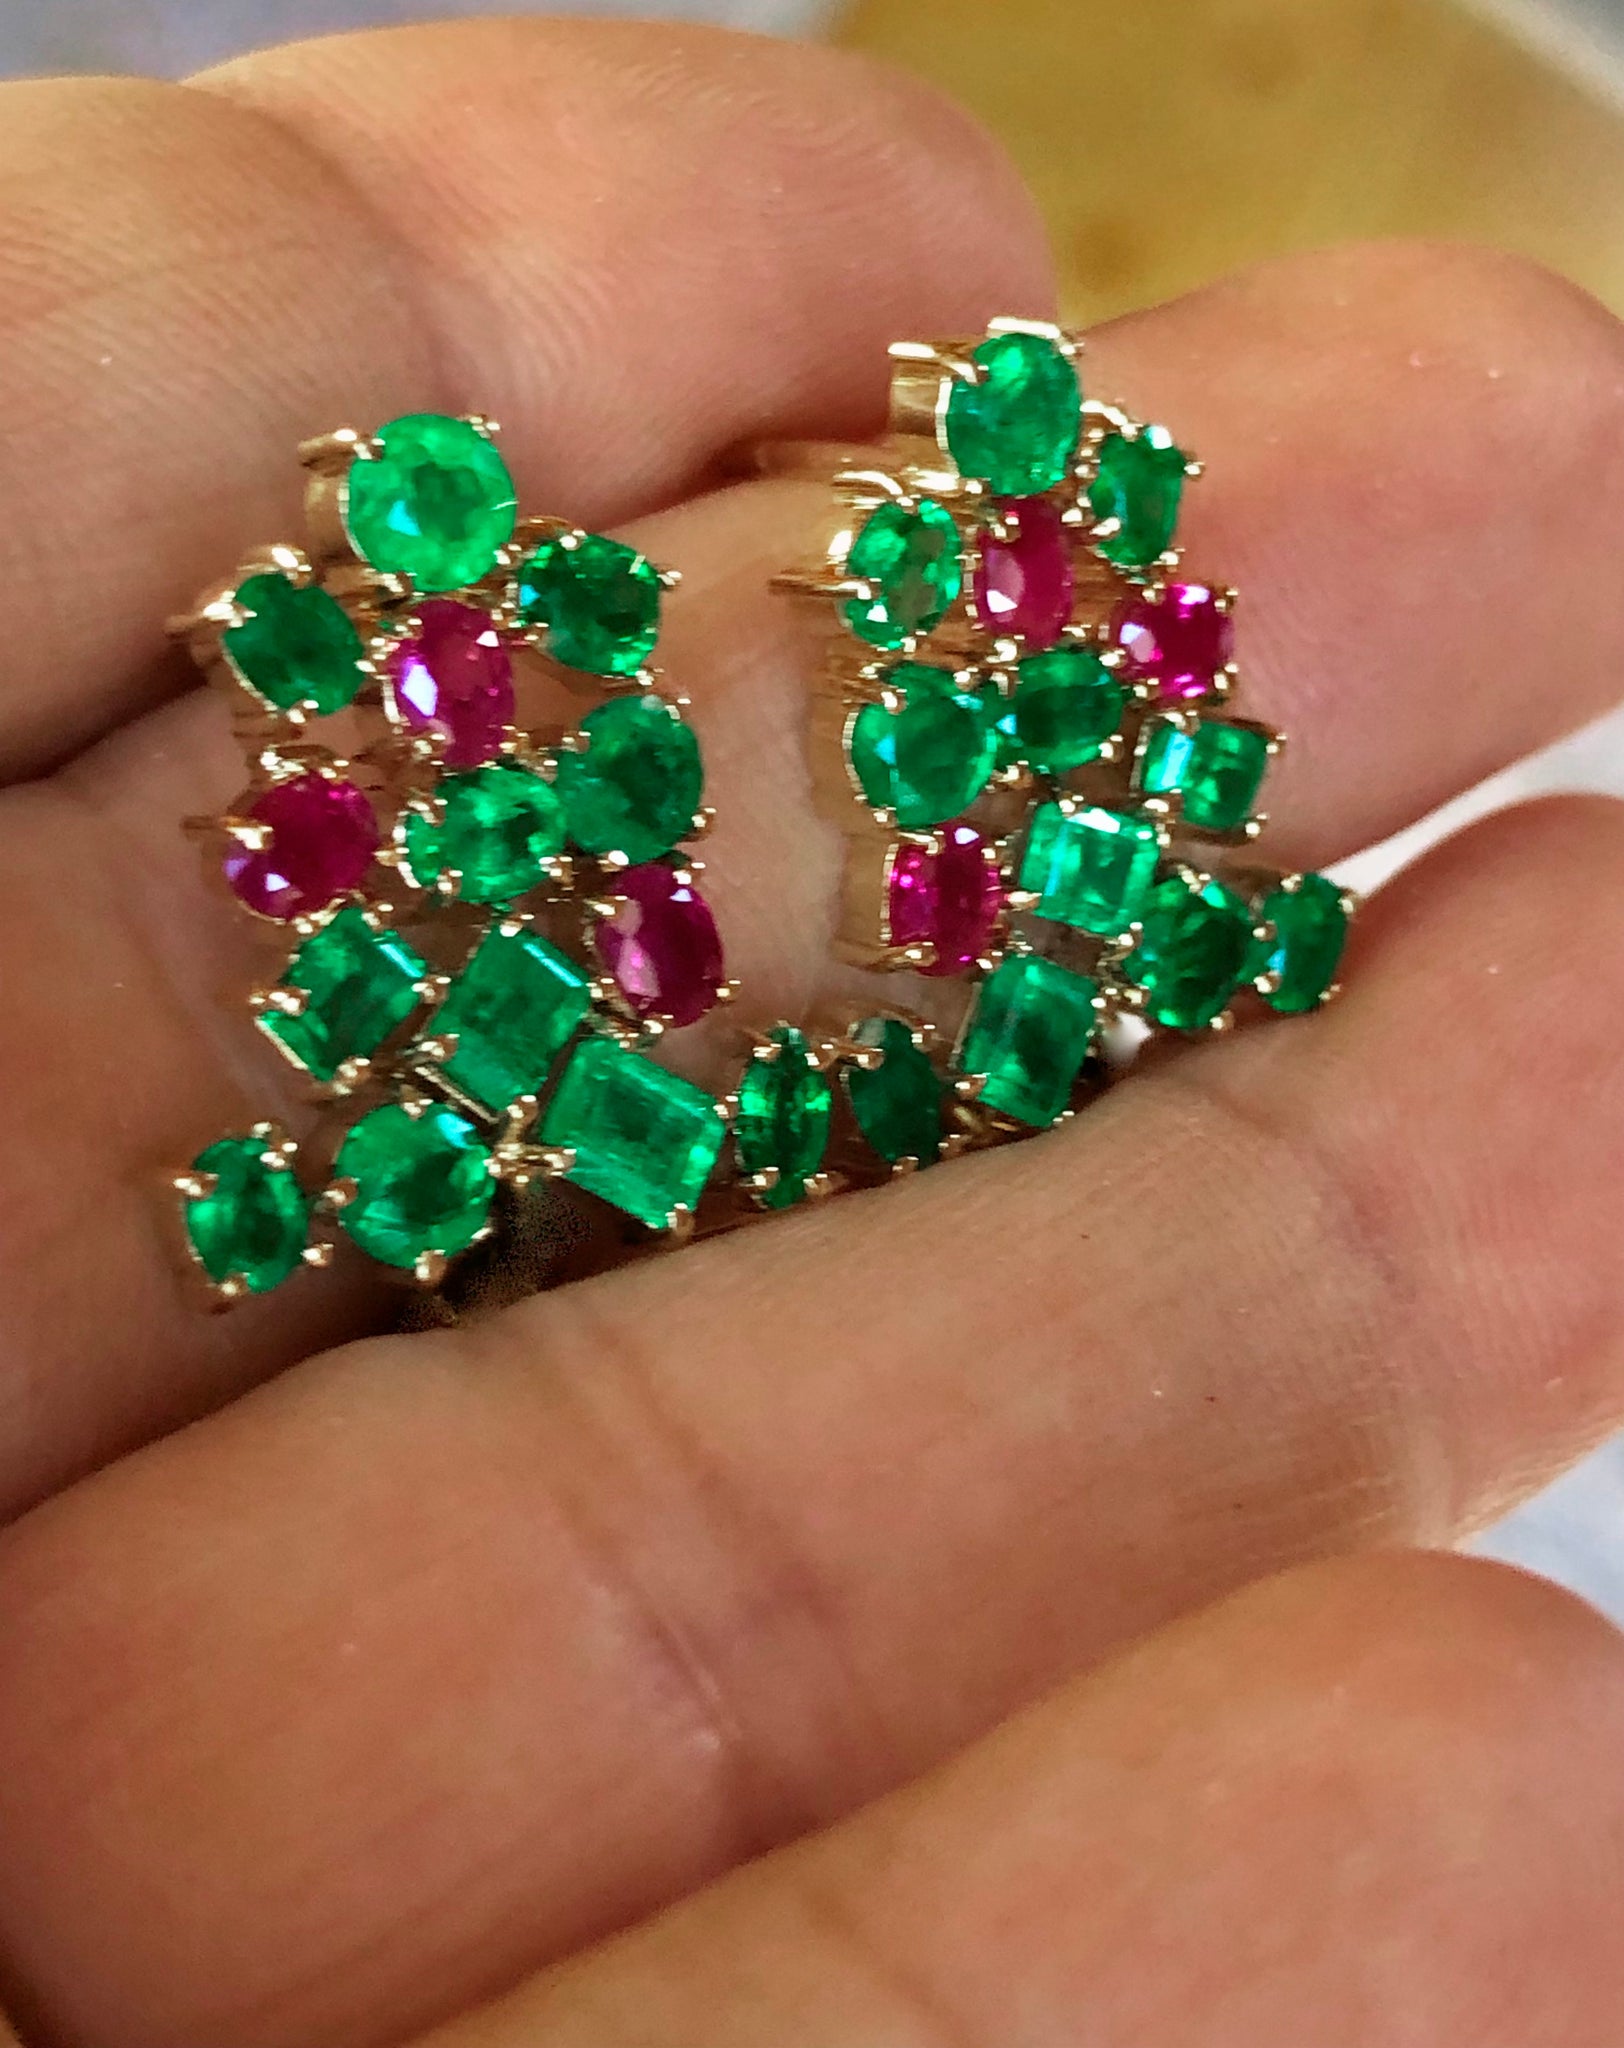 6.50 Carat Fine Colombian Emerald Ruby Stud Earrings 18K Yellow Gold